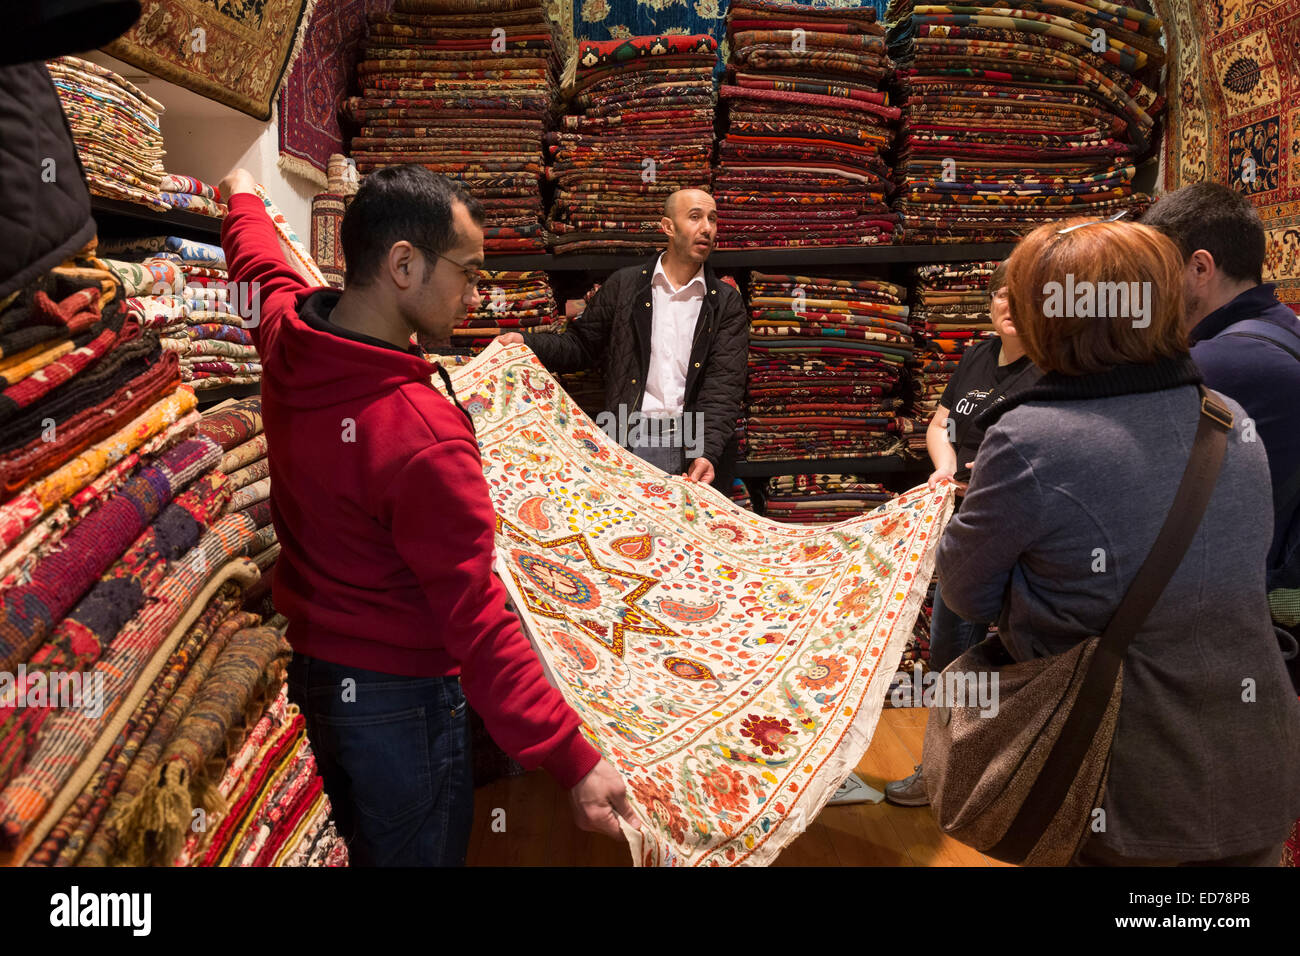 Verkäufer mit traditionellen türkischen Teppich Teppich in den großen Basar  Kapalicarsi, großer Markt, Beyazi, Istanbul, Türkei Stockfotografie - Alamy